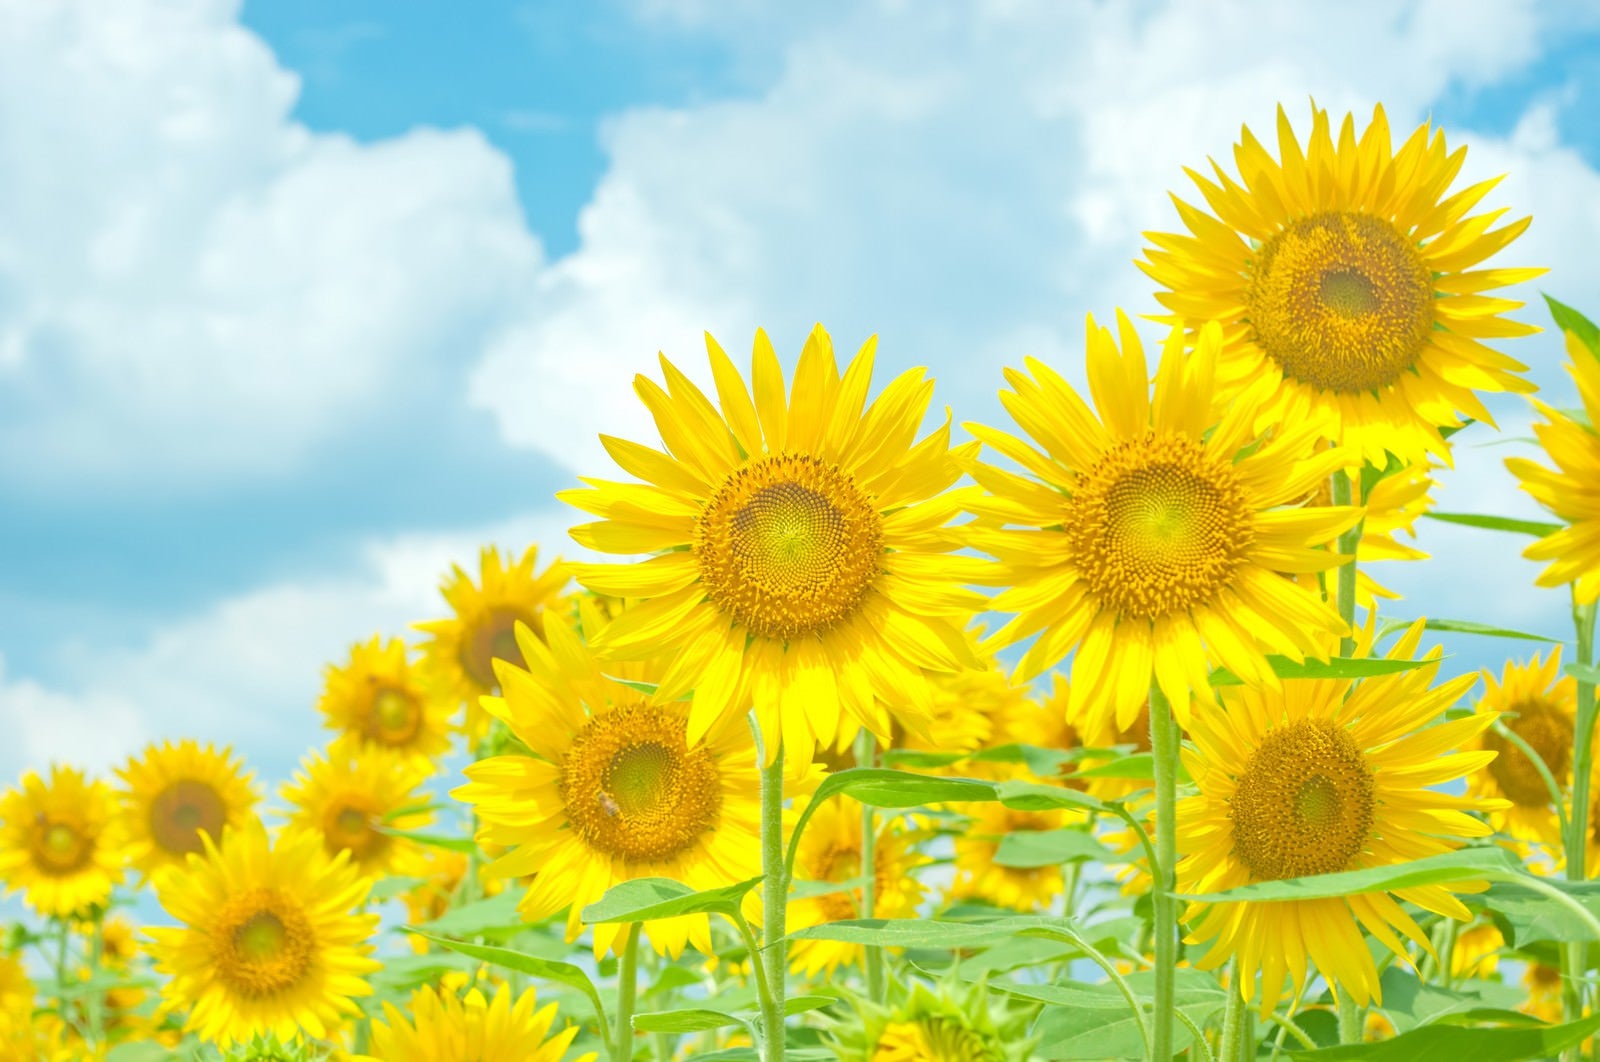 「青空と黄色い向日葵」の写真